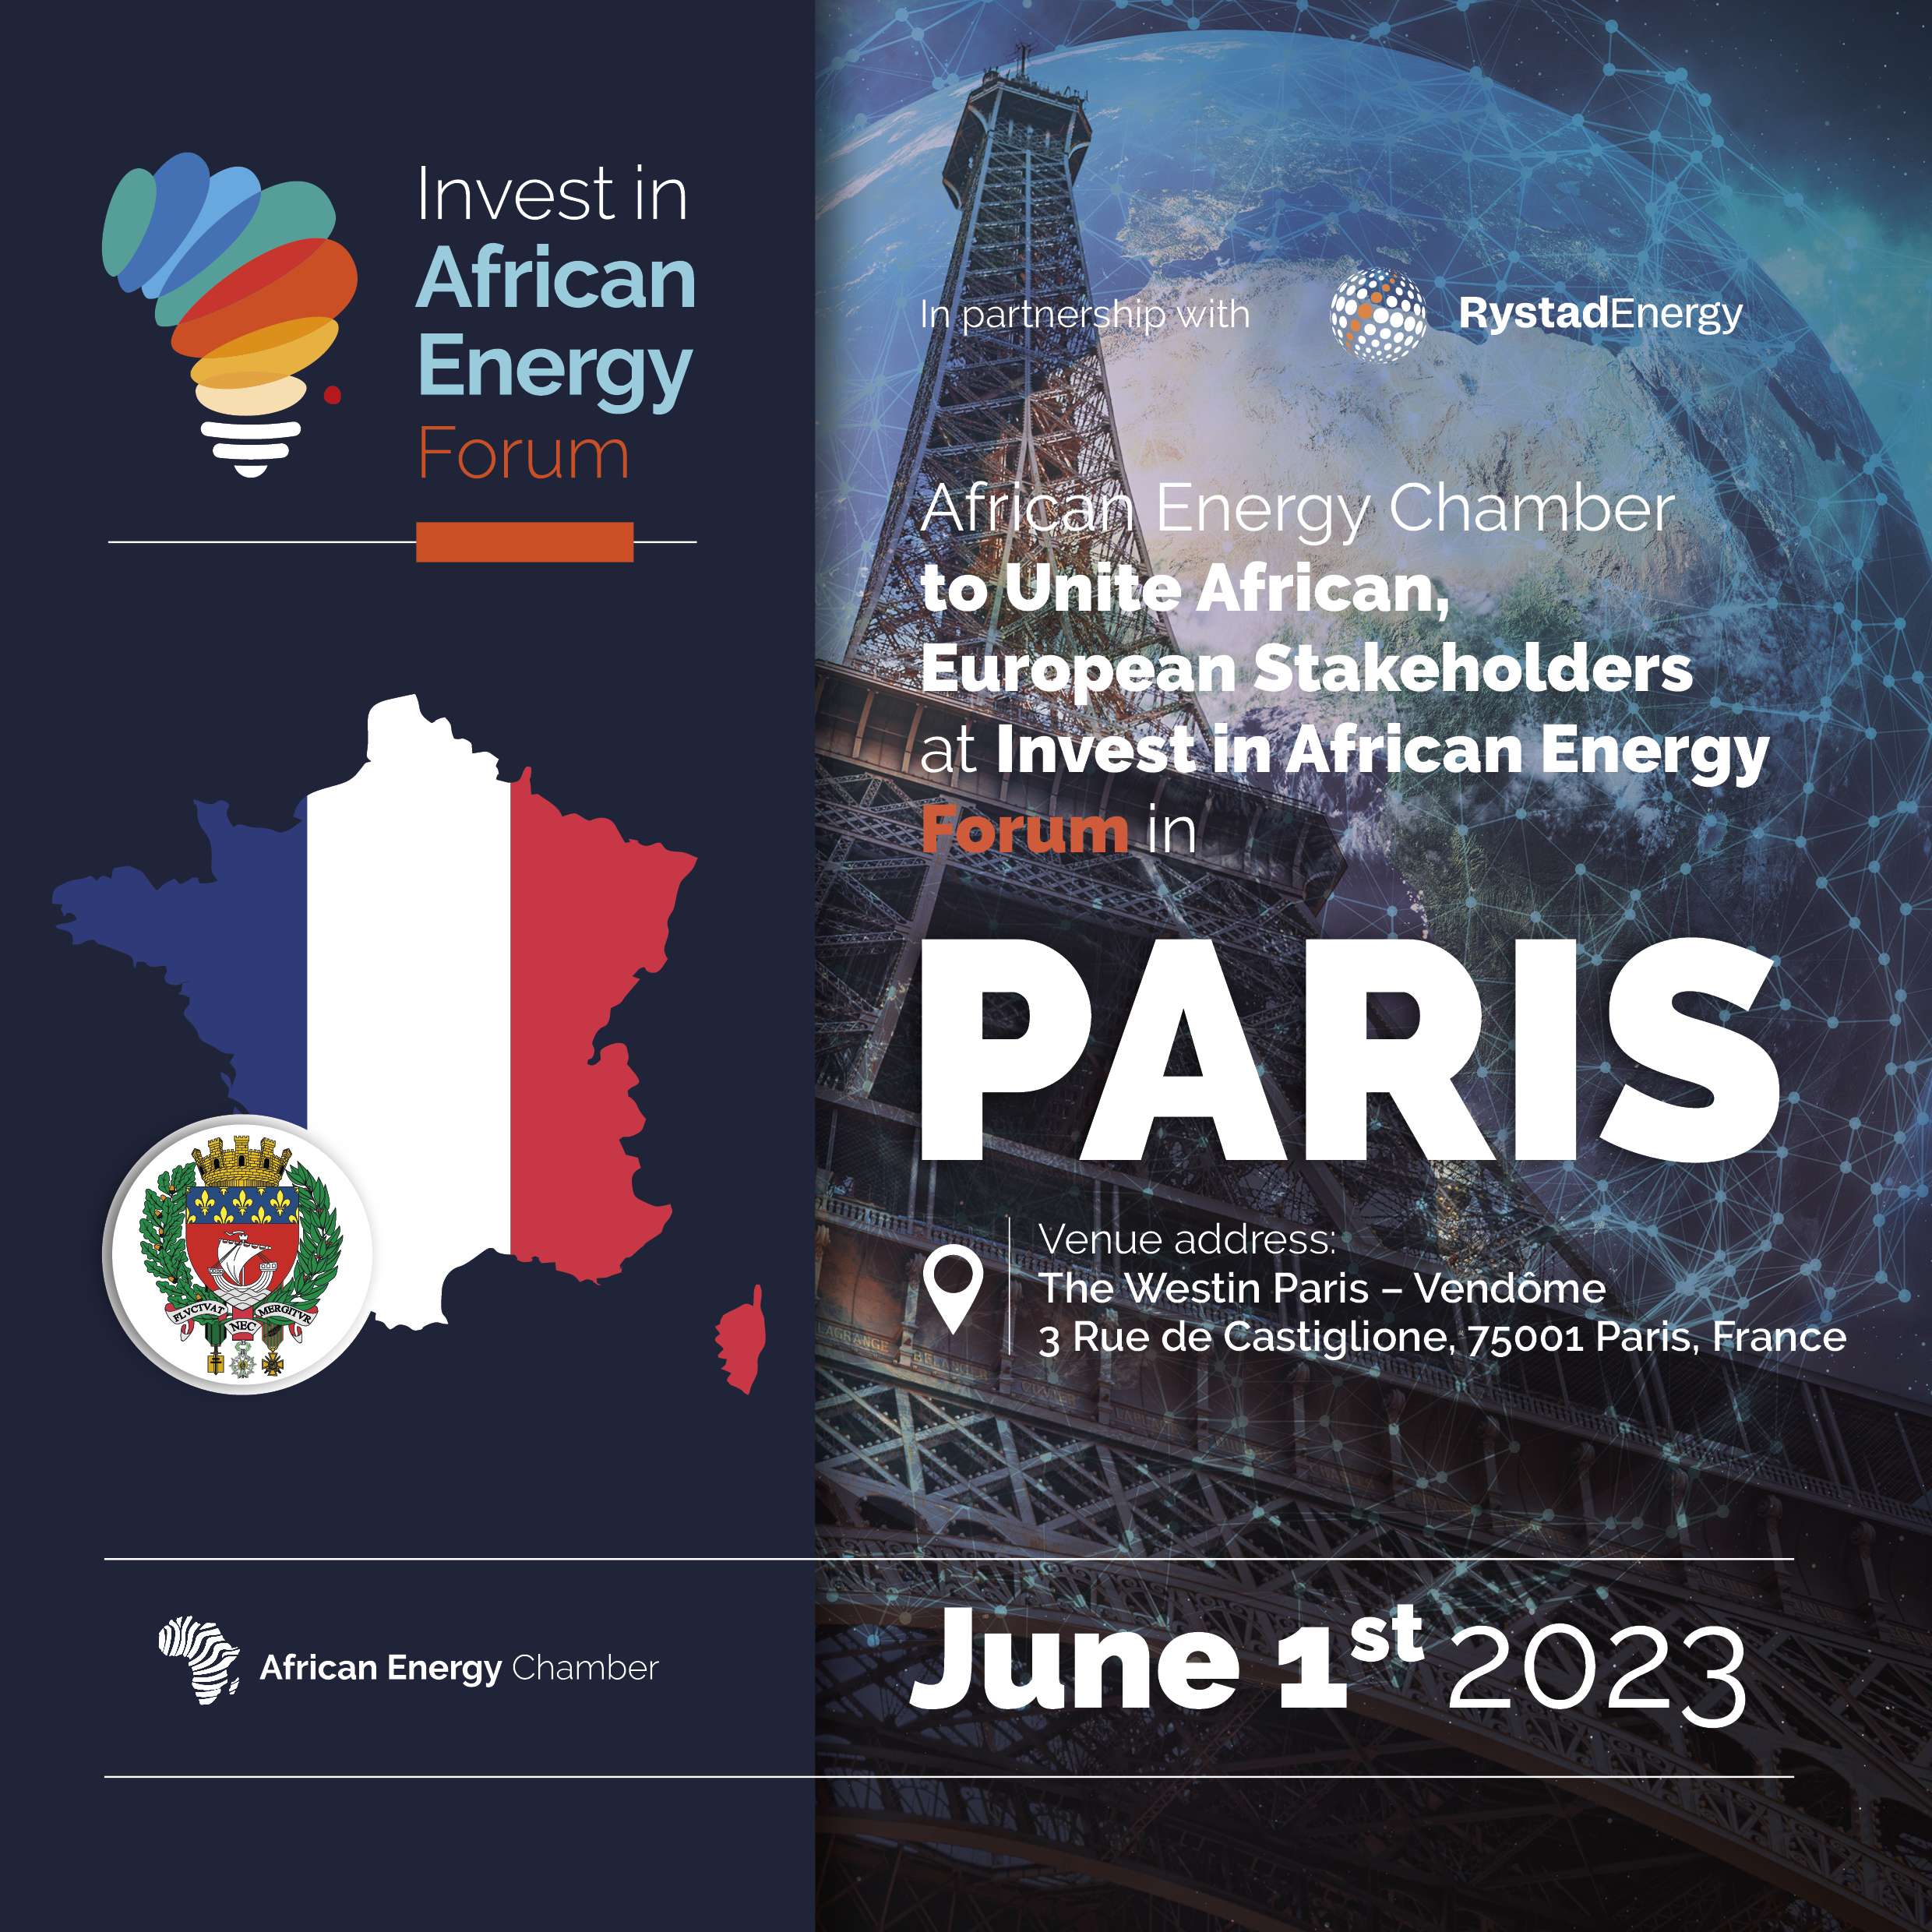 Le Forum Invest in African Energy Paris, organisé par la Chambre africaine de l’énergie (AEC) qui se tiendra le 1er juin 2023 à Paris, accueillera plusieurs ministres africains